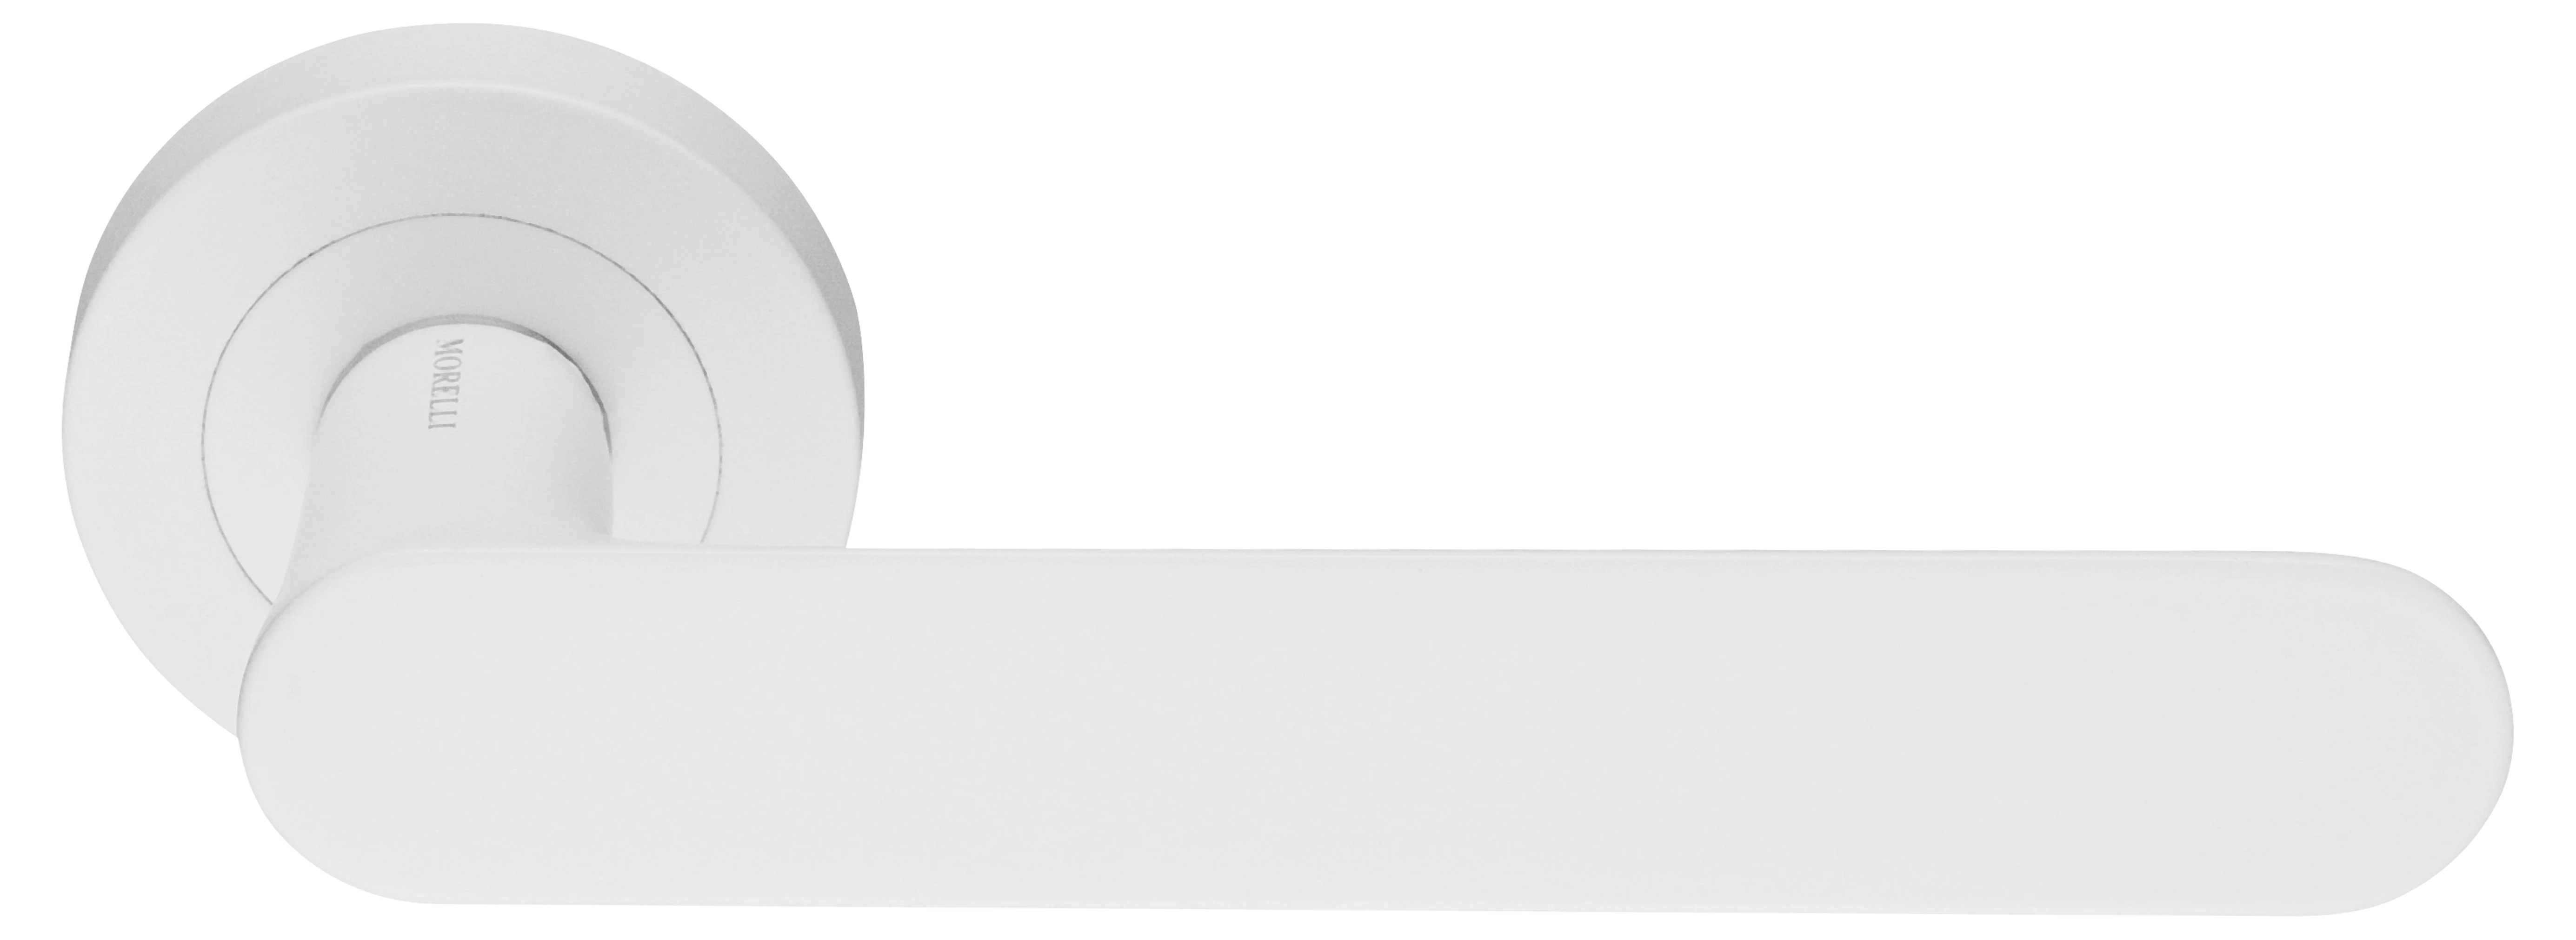 LE BOAT R2 BIA, ручка дверная, цвет - белый фото купить Севастополь